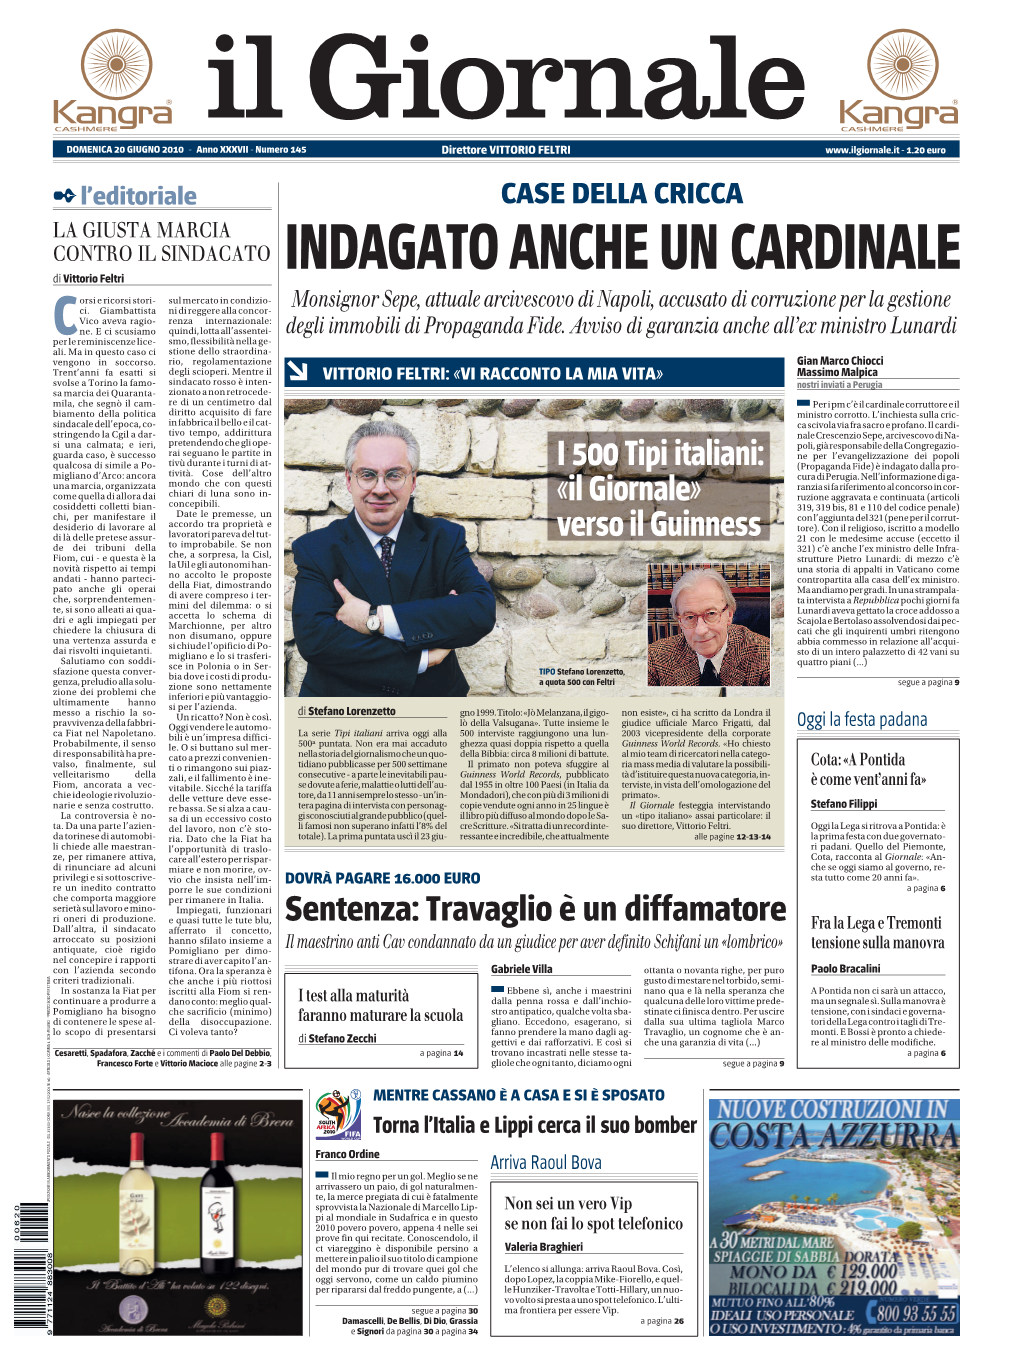 VITTORIO FELTRI - 1.20 Euro L’Editoriale CASE DELLA CRICCA LA GIUSTA MARCIA CONTRO IL SINDACATO INDAGATO ANCHE UN CARDINALE Di Vittorio Feltri